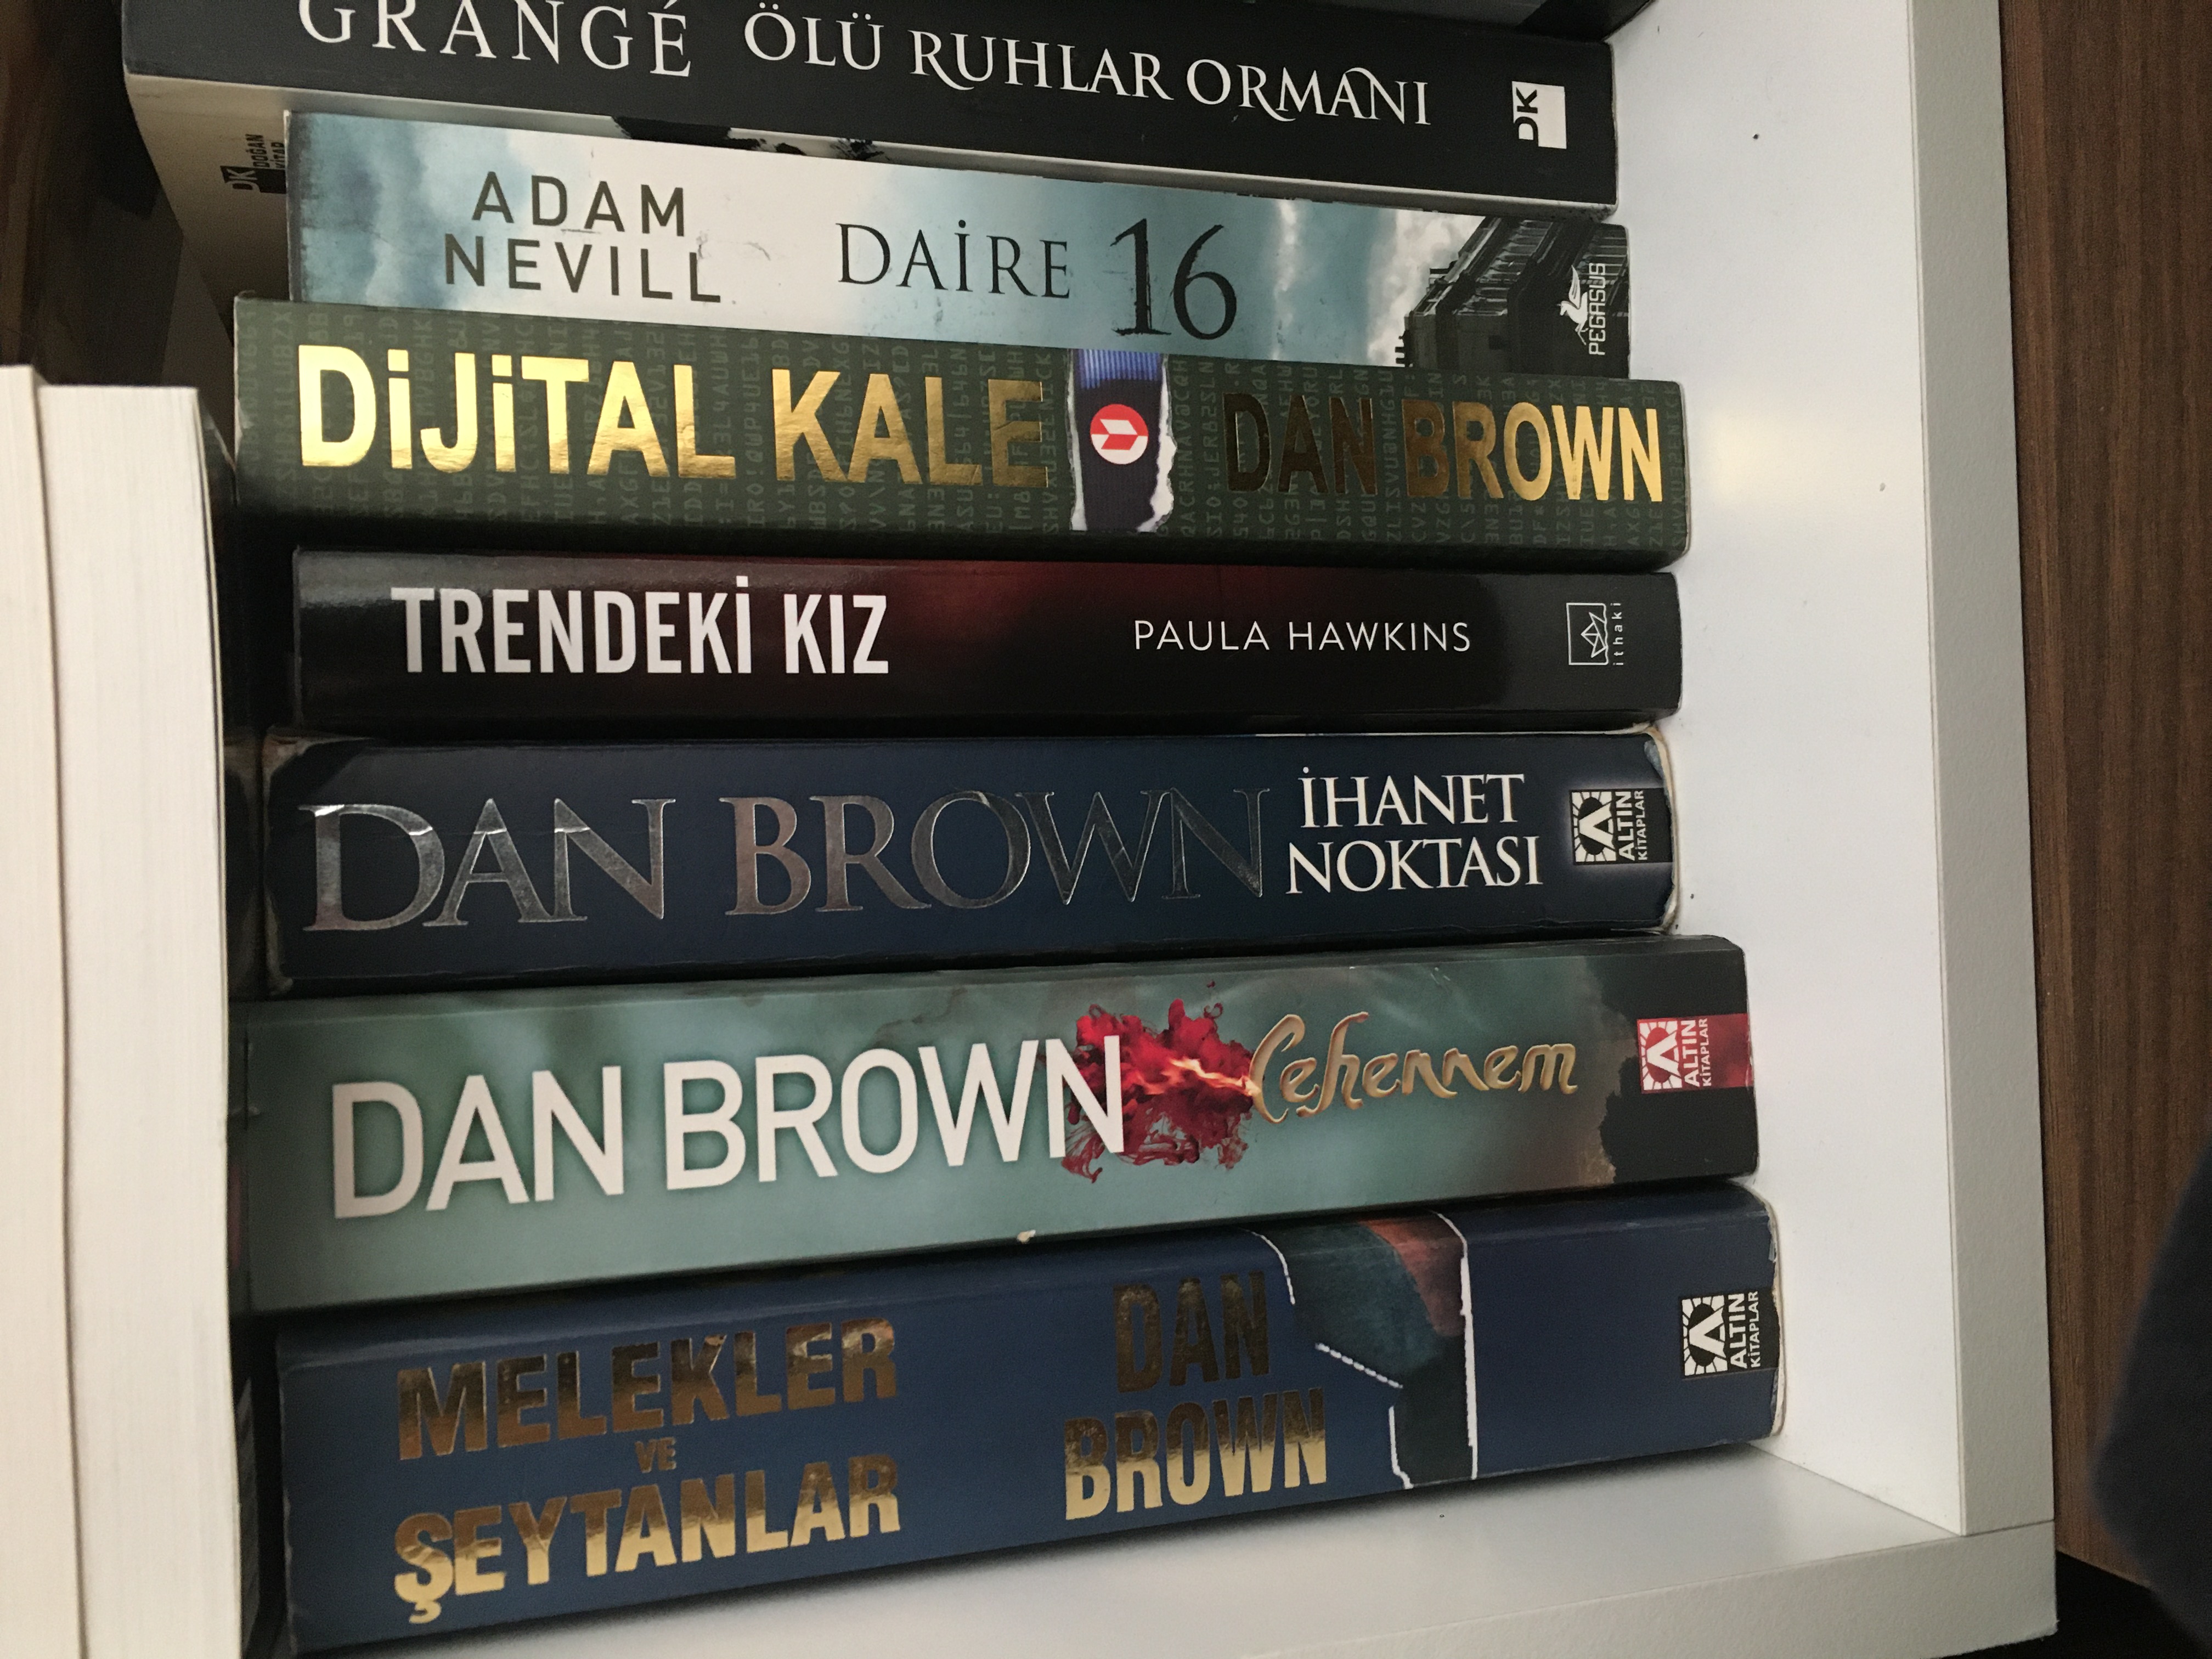 Dan Brown Kitapları